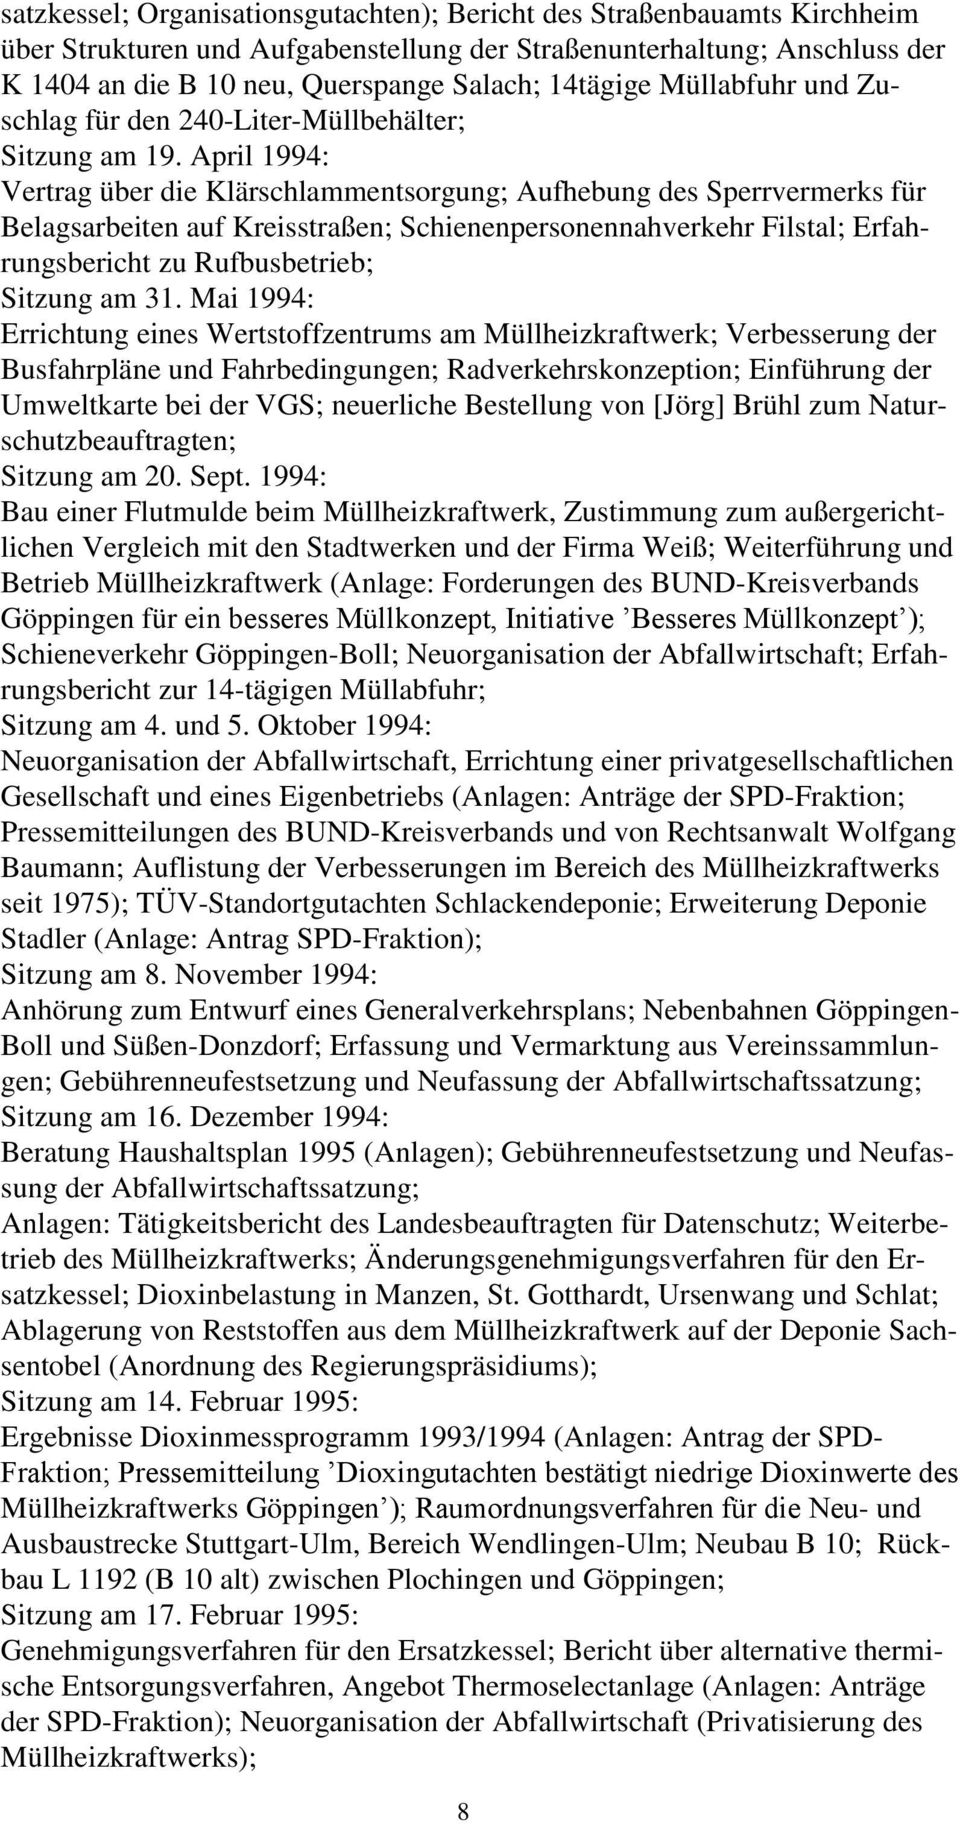 April 1994: Vertrag über die Klärschlammentsorgung; Aufhebung des Sperrvermerks für Belagsarbeiten auf Kreisstraßen; Schienenpersonennahverkehr Filstal; Erfahrungsbericht zu Rufbusbetrieb; Sitzung am